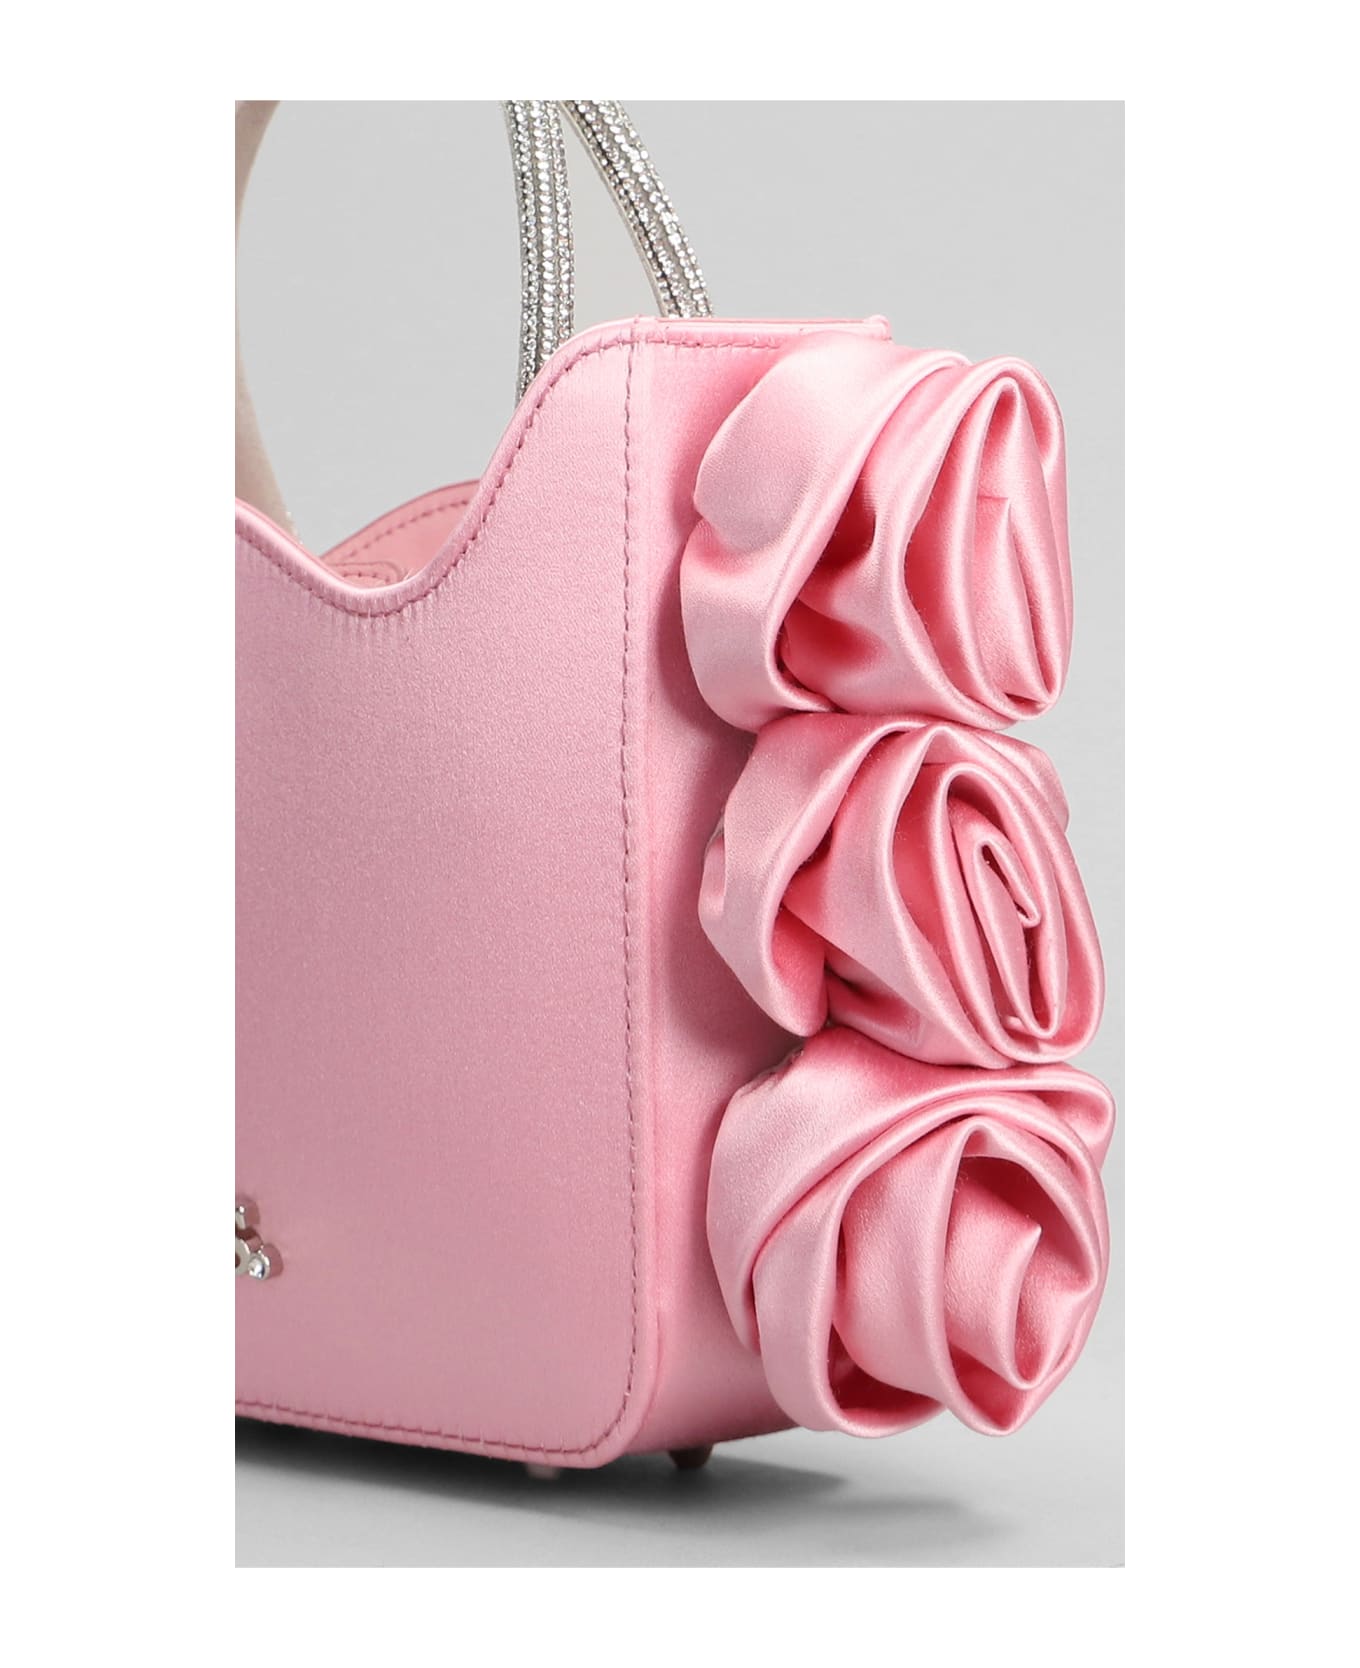 Le Silla Rose Shoulder Bag In Rose-pink Satin - rose-pink